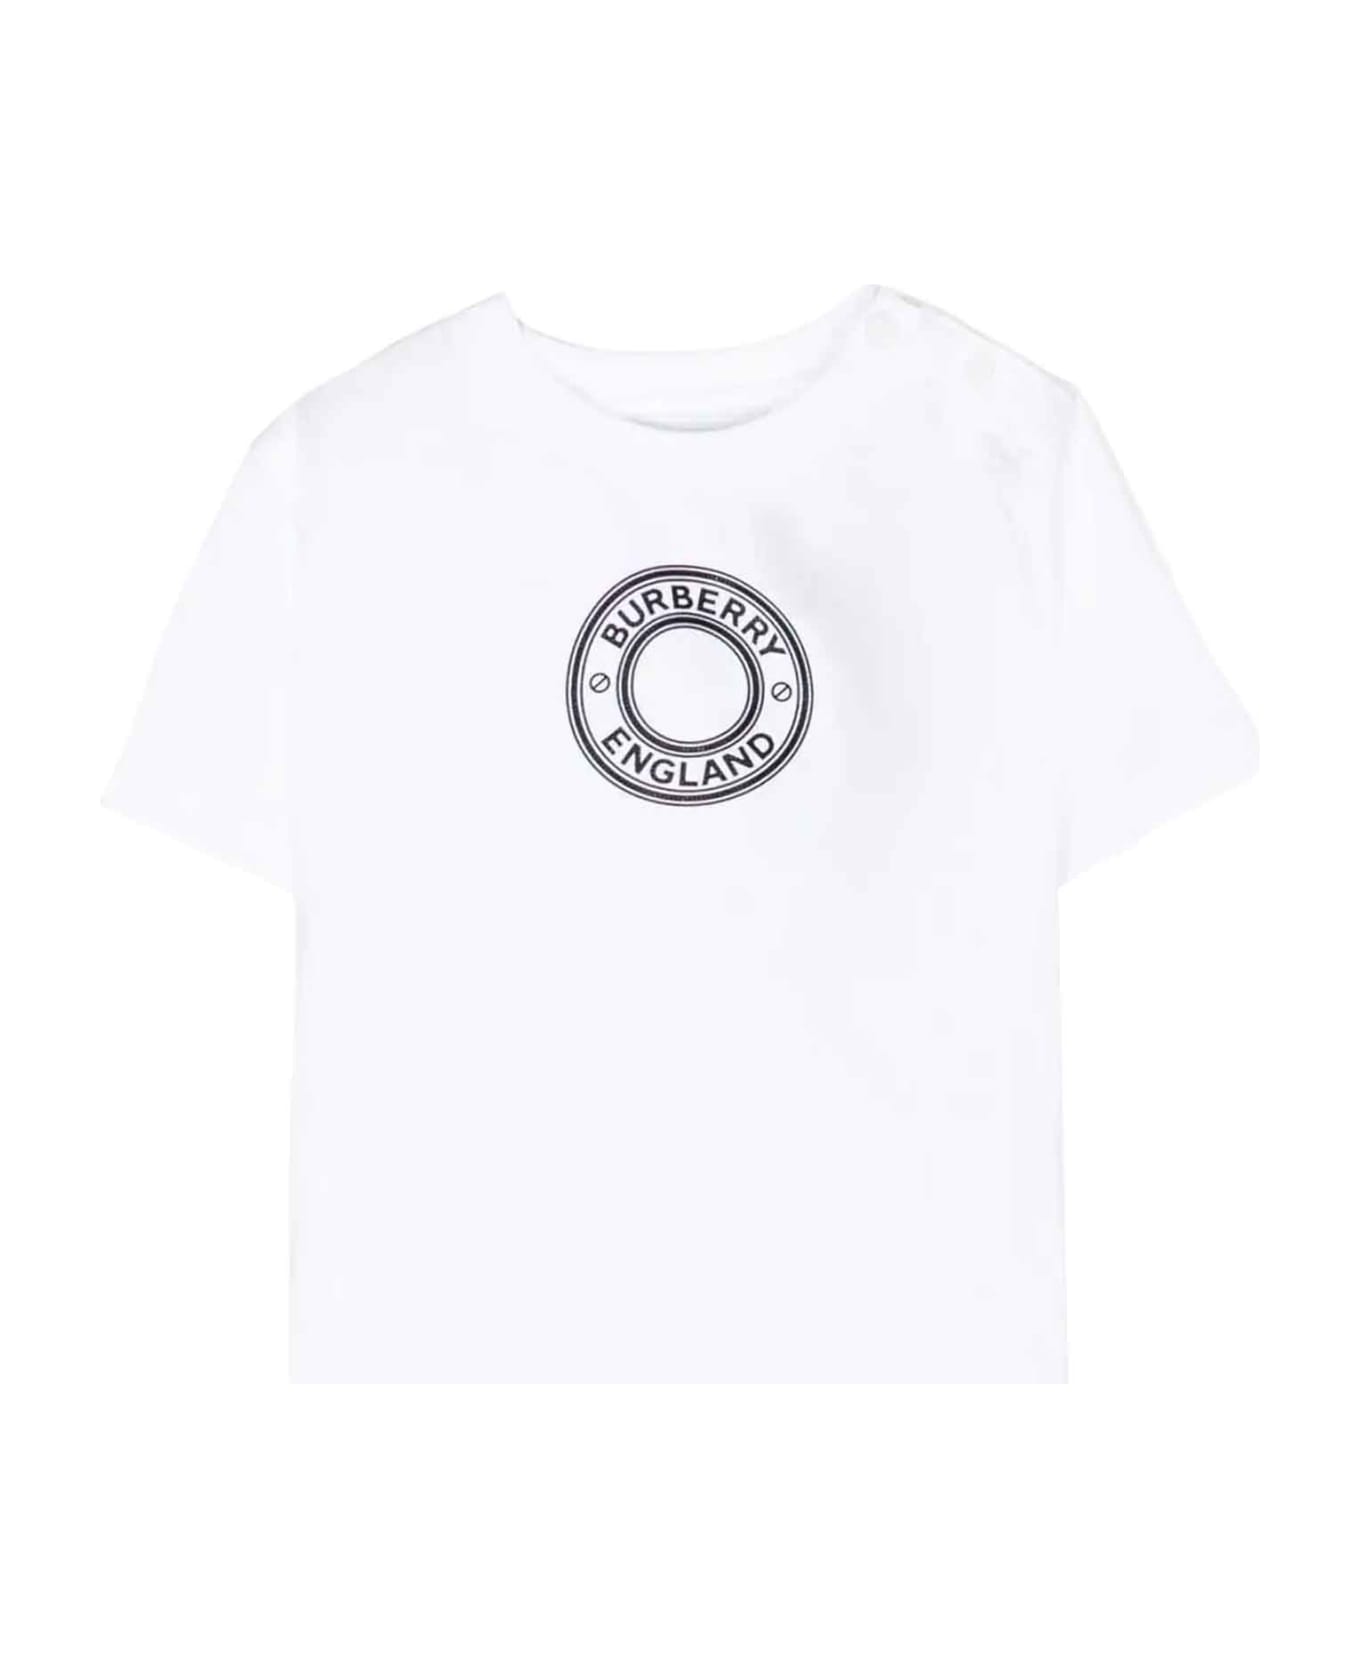 Burberry White T-shirt Baby Unisex - Bianco